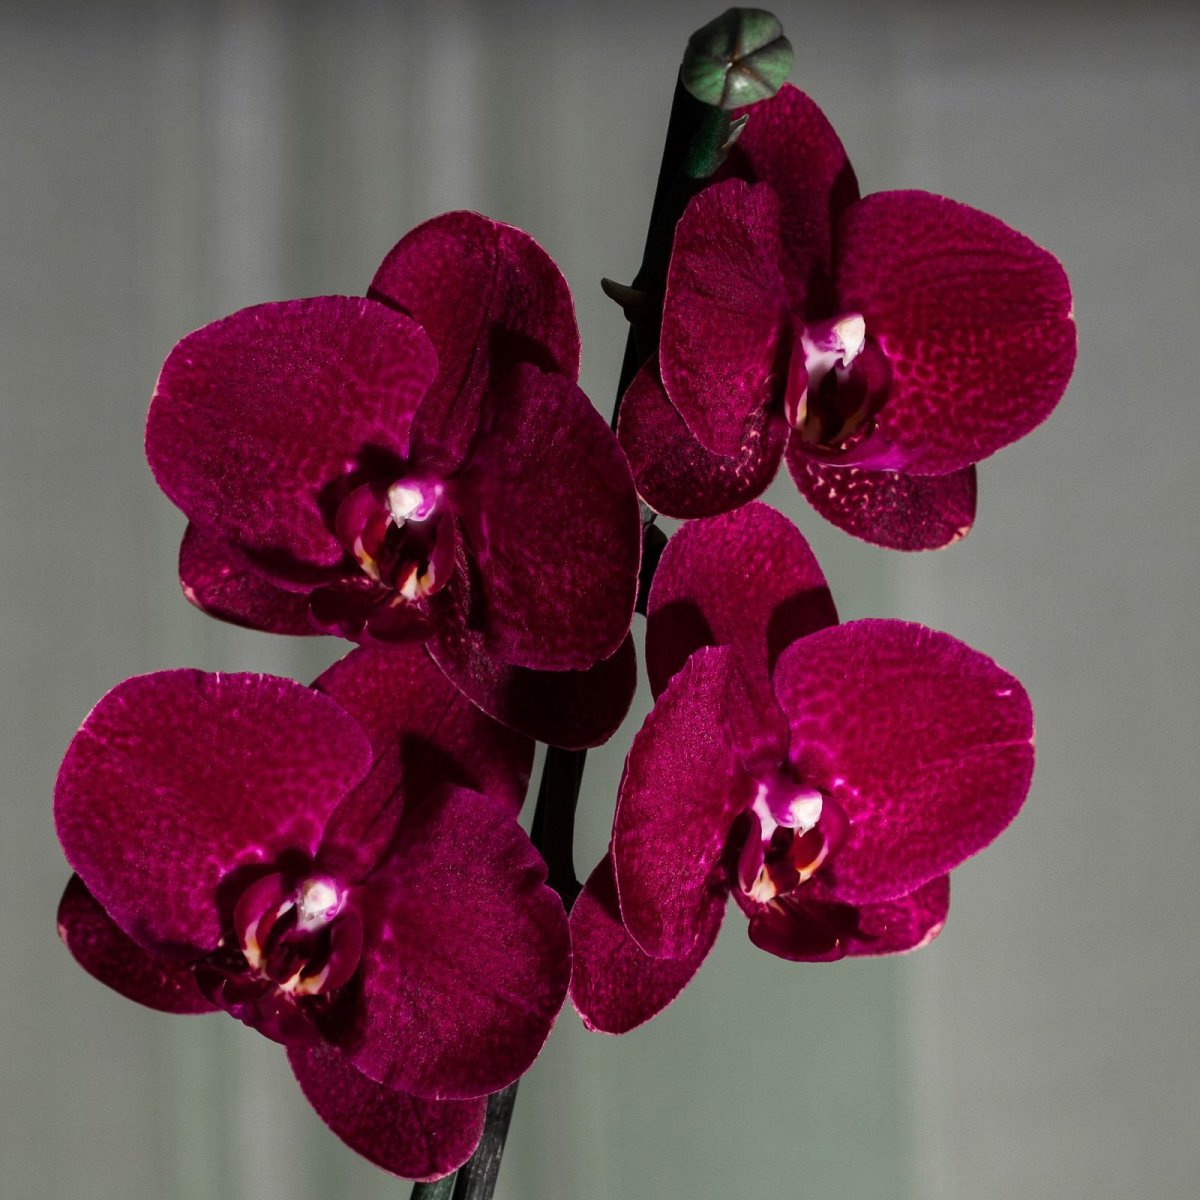 Как размножить орхидею в домашних условиях? Советы и фото